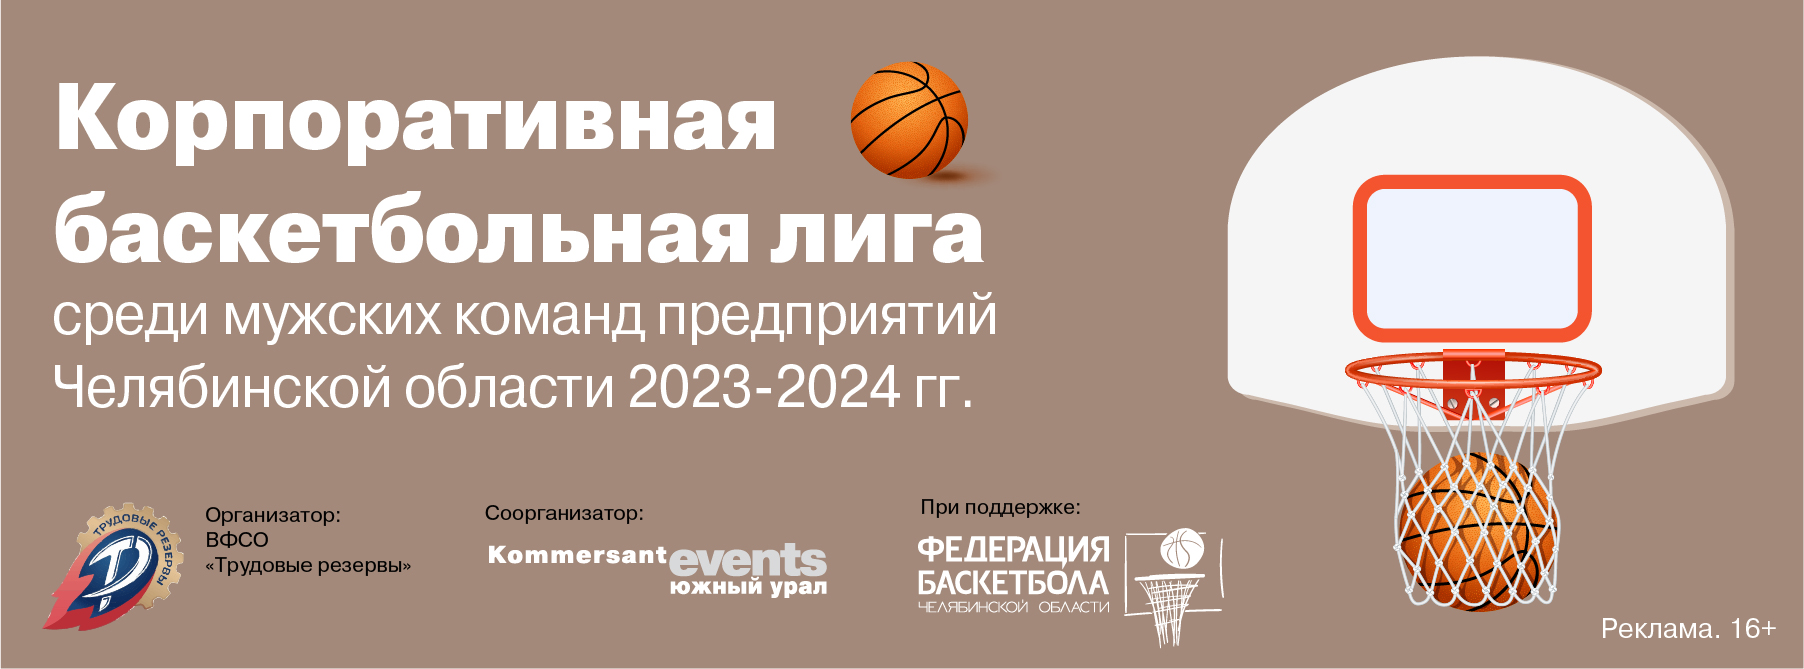 Корпоративная баскетбольная лига среди мужских команд предприятий Челябинской области 2023-2024 гг.